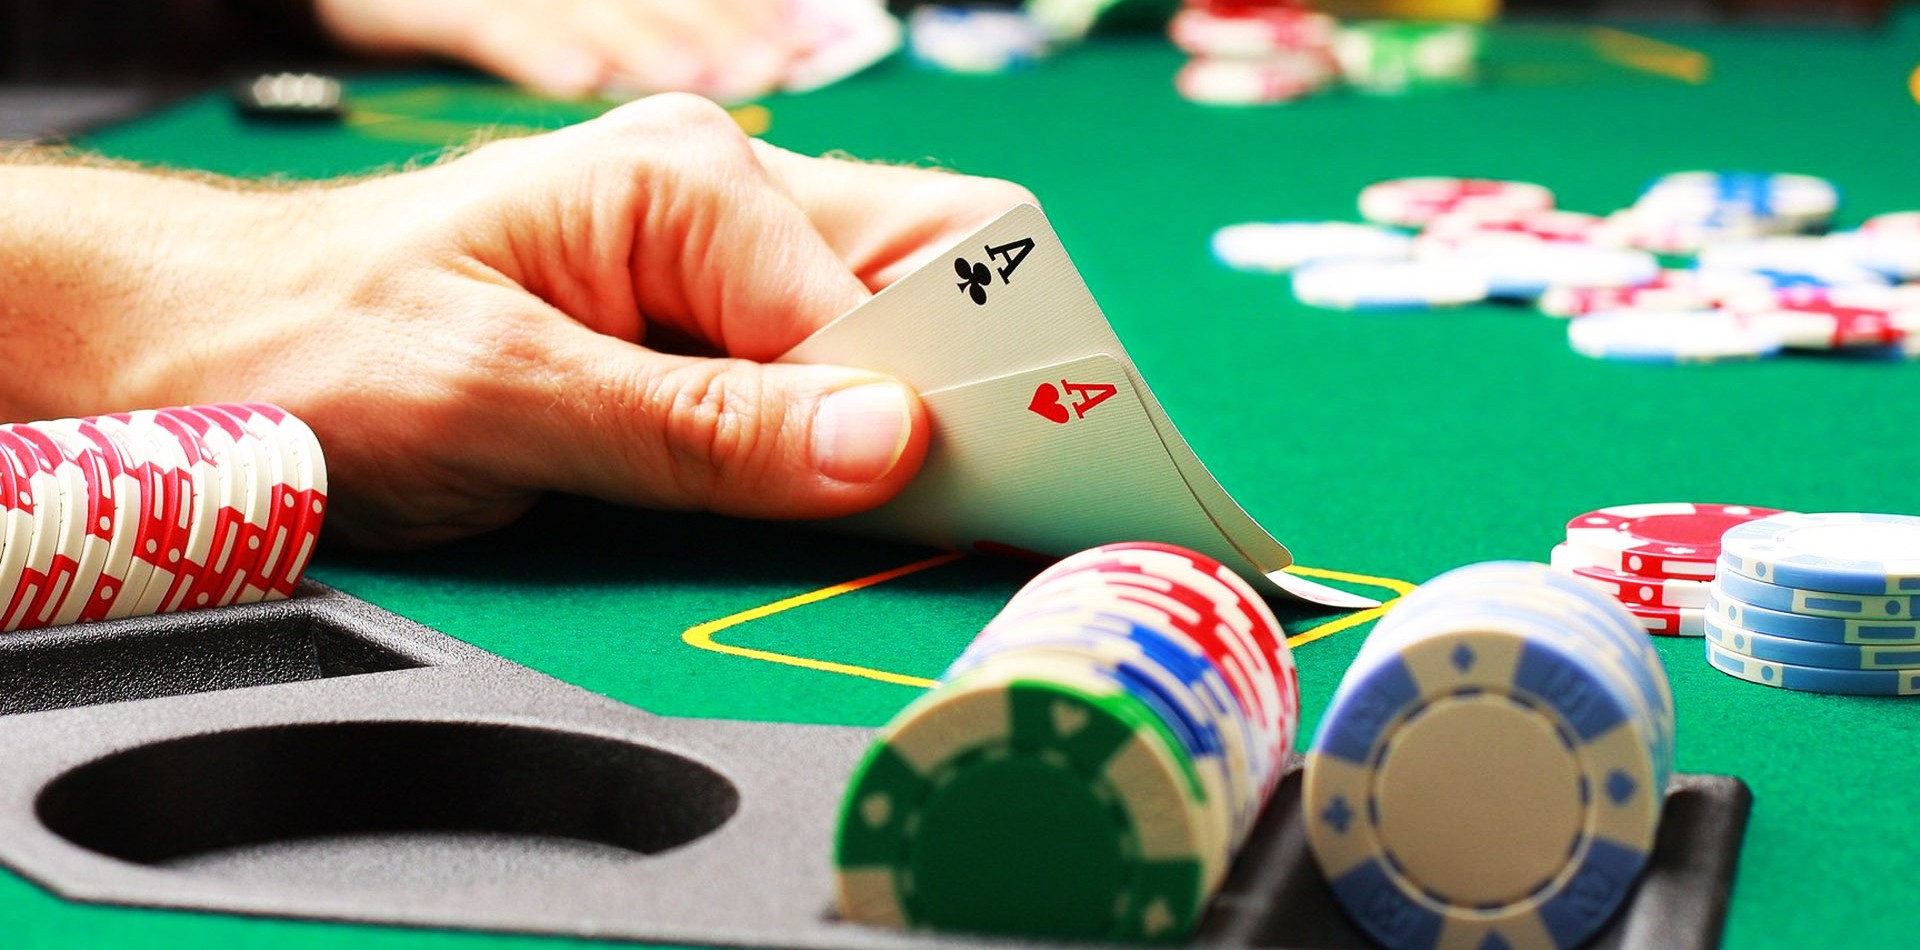 Tổng hợp 10 mẹo chơi Poker giỏi từ các cao thủ hàng đầu